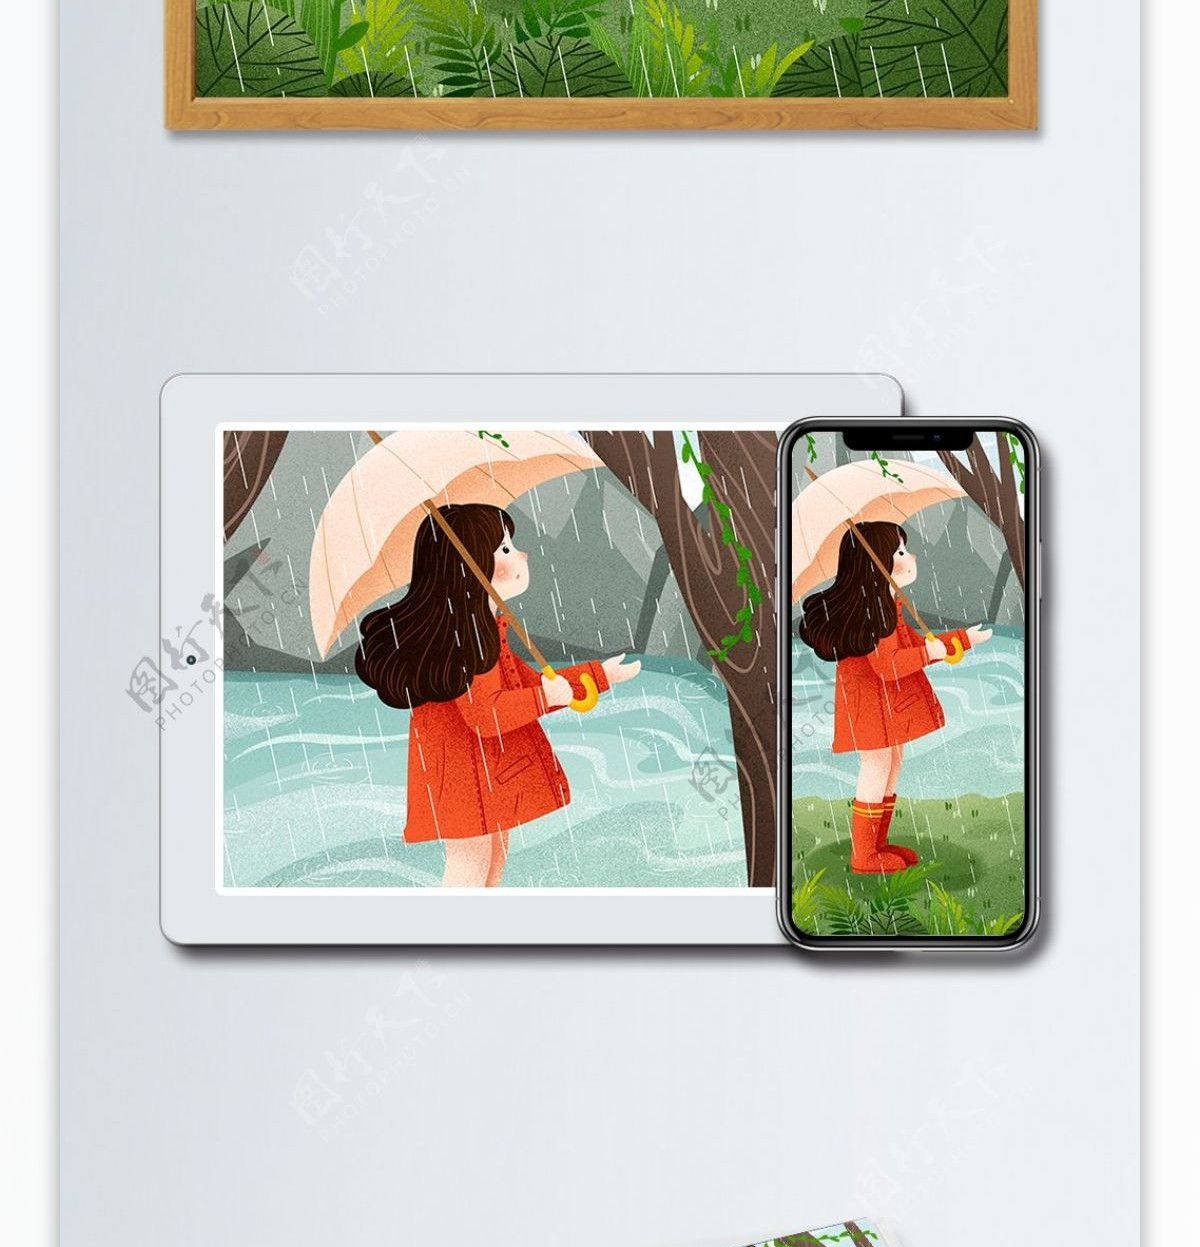 二十四节气雨水雨中撑伞女孩插画